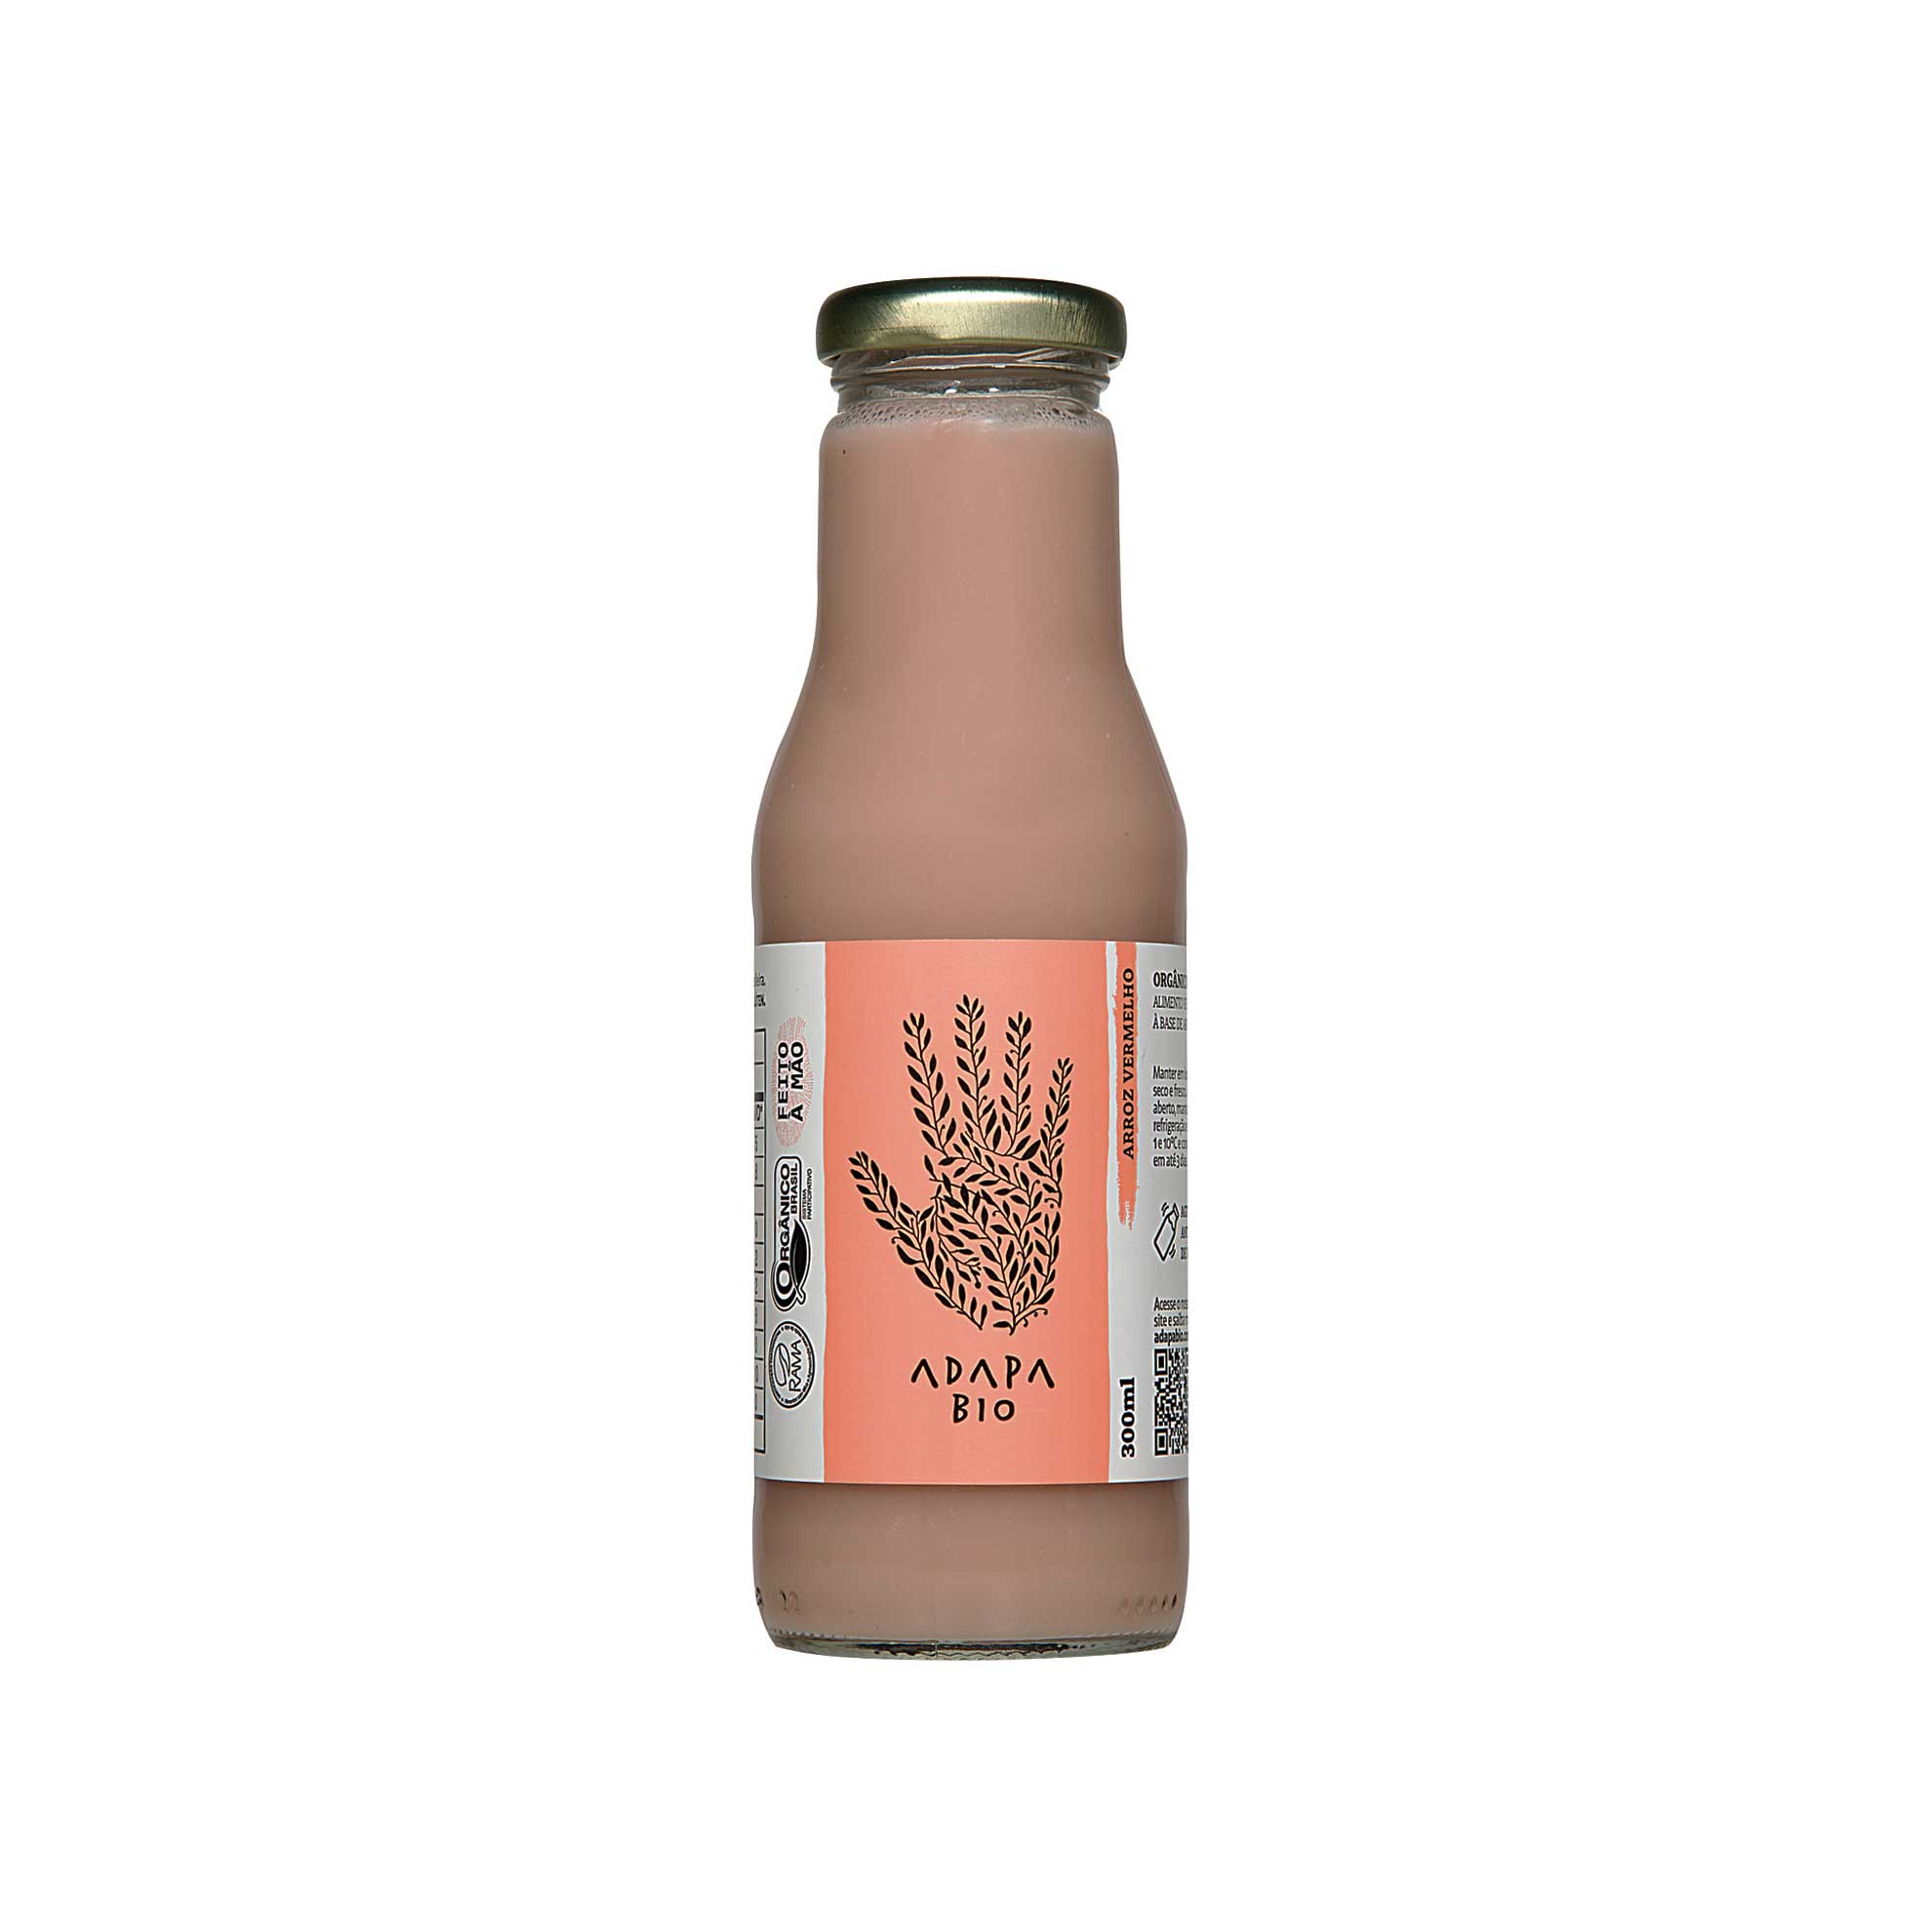 Sabonete Líquido para as Mãos Palmolive Nutri-Milk Nutre & Hidrata 500ml Sabonete  Líquido para Mãos - Supermercado Savegnago